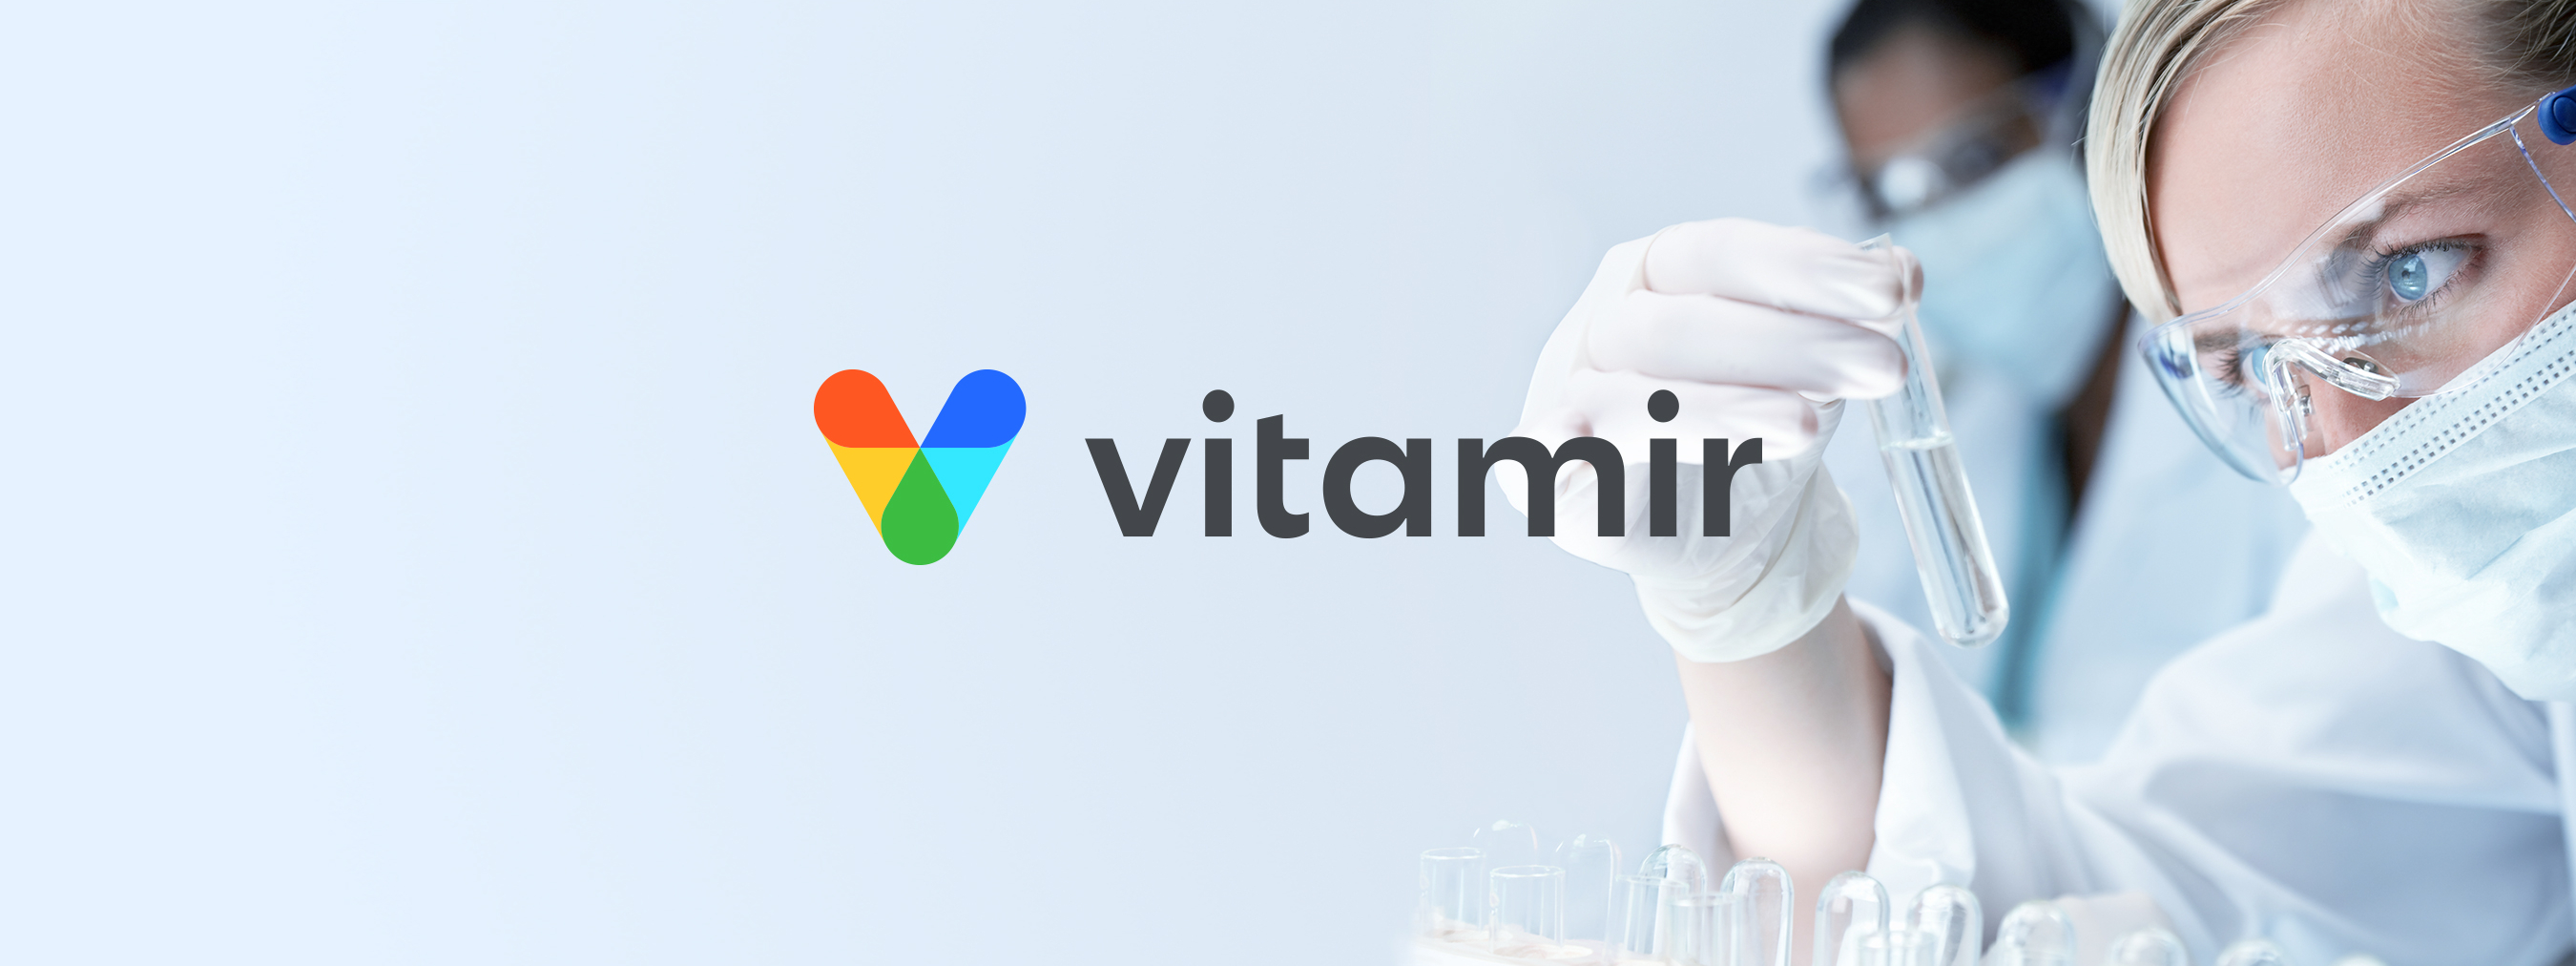 Создание логотипа Vitamir